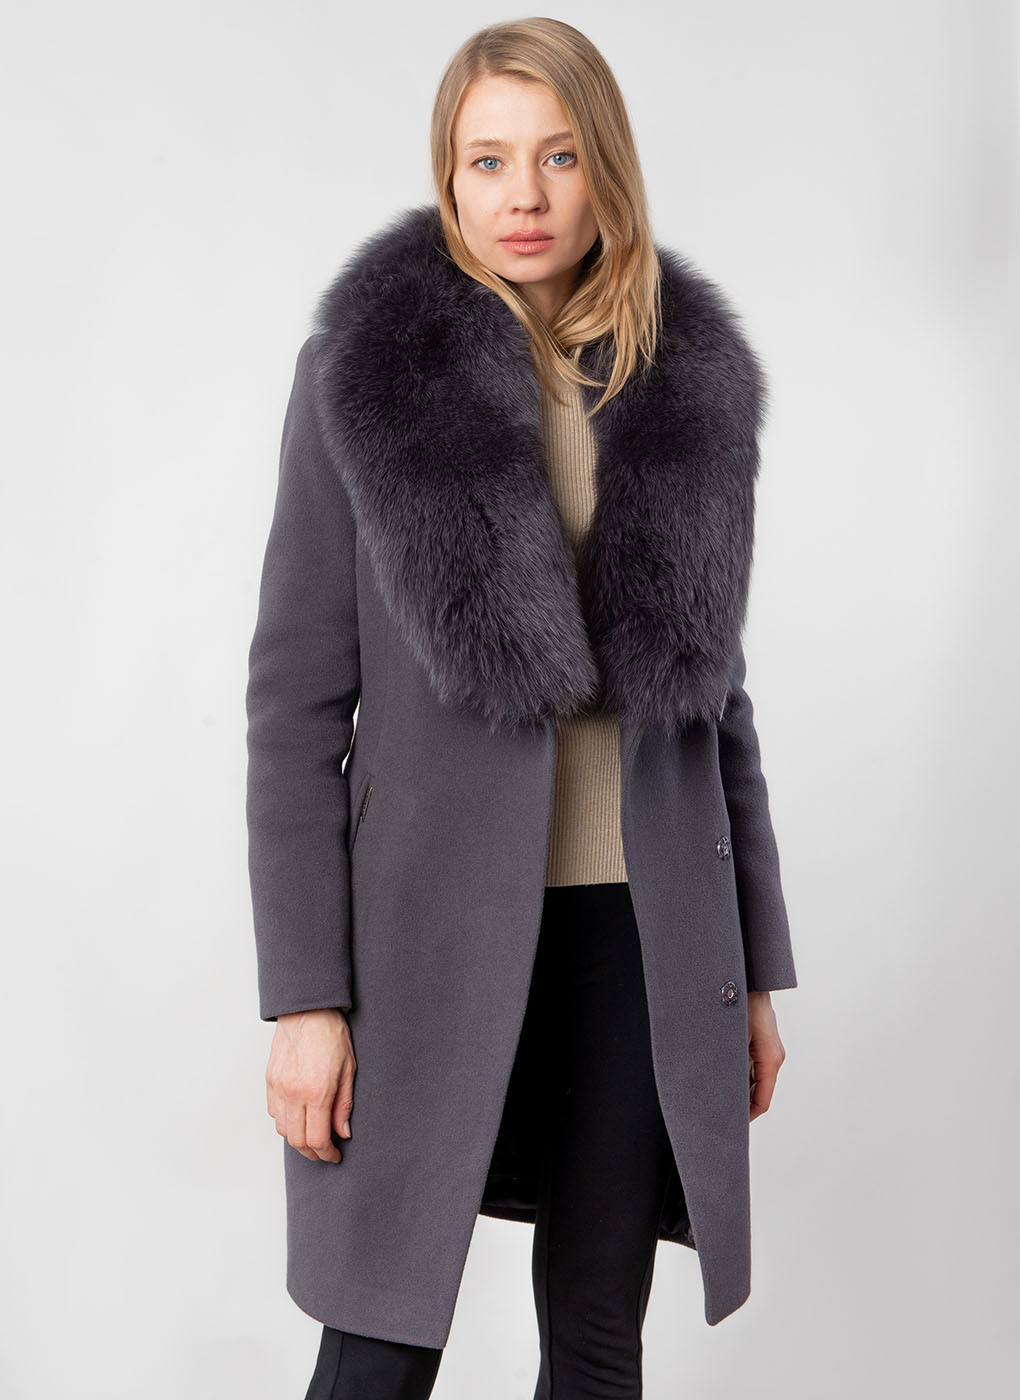 Пальто зимнее приталенное шерстяное 58, idekka, Фиолетово-коричневый, 1509178 купить в Москве - интернет магазин fursk.ru